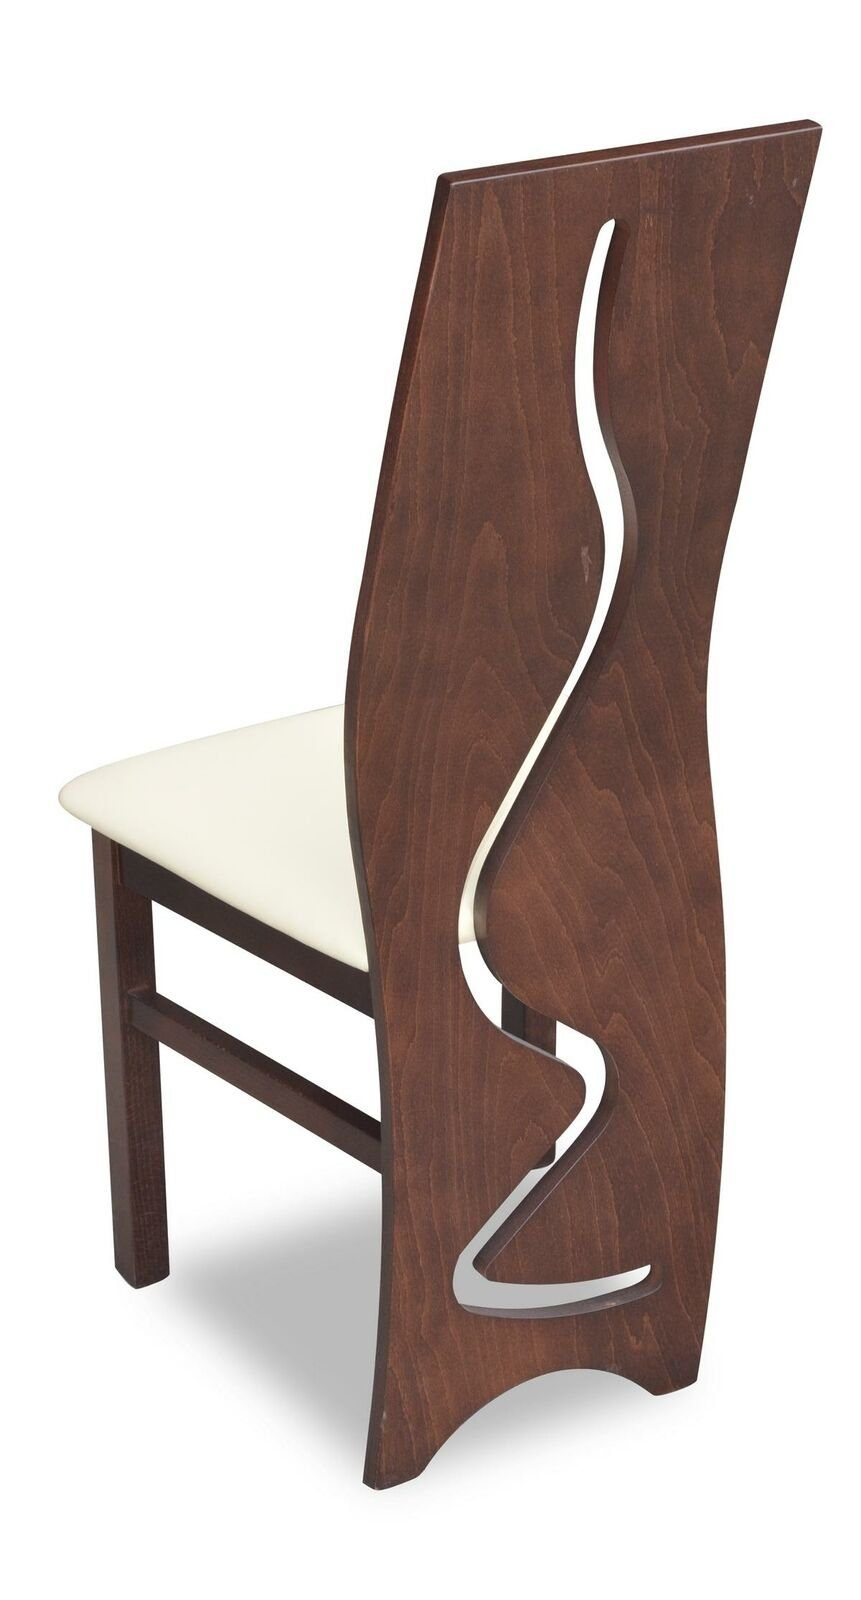 Stuhl, 8x Neu Garnitur Sessel Lehn Modernes Set Polster JVmoebel Design Stuhl Komplett Stühle